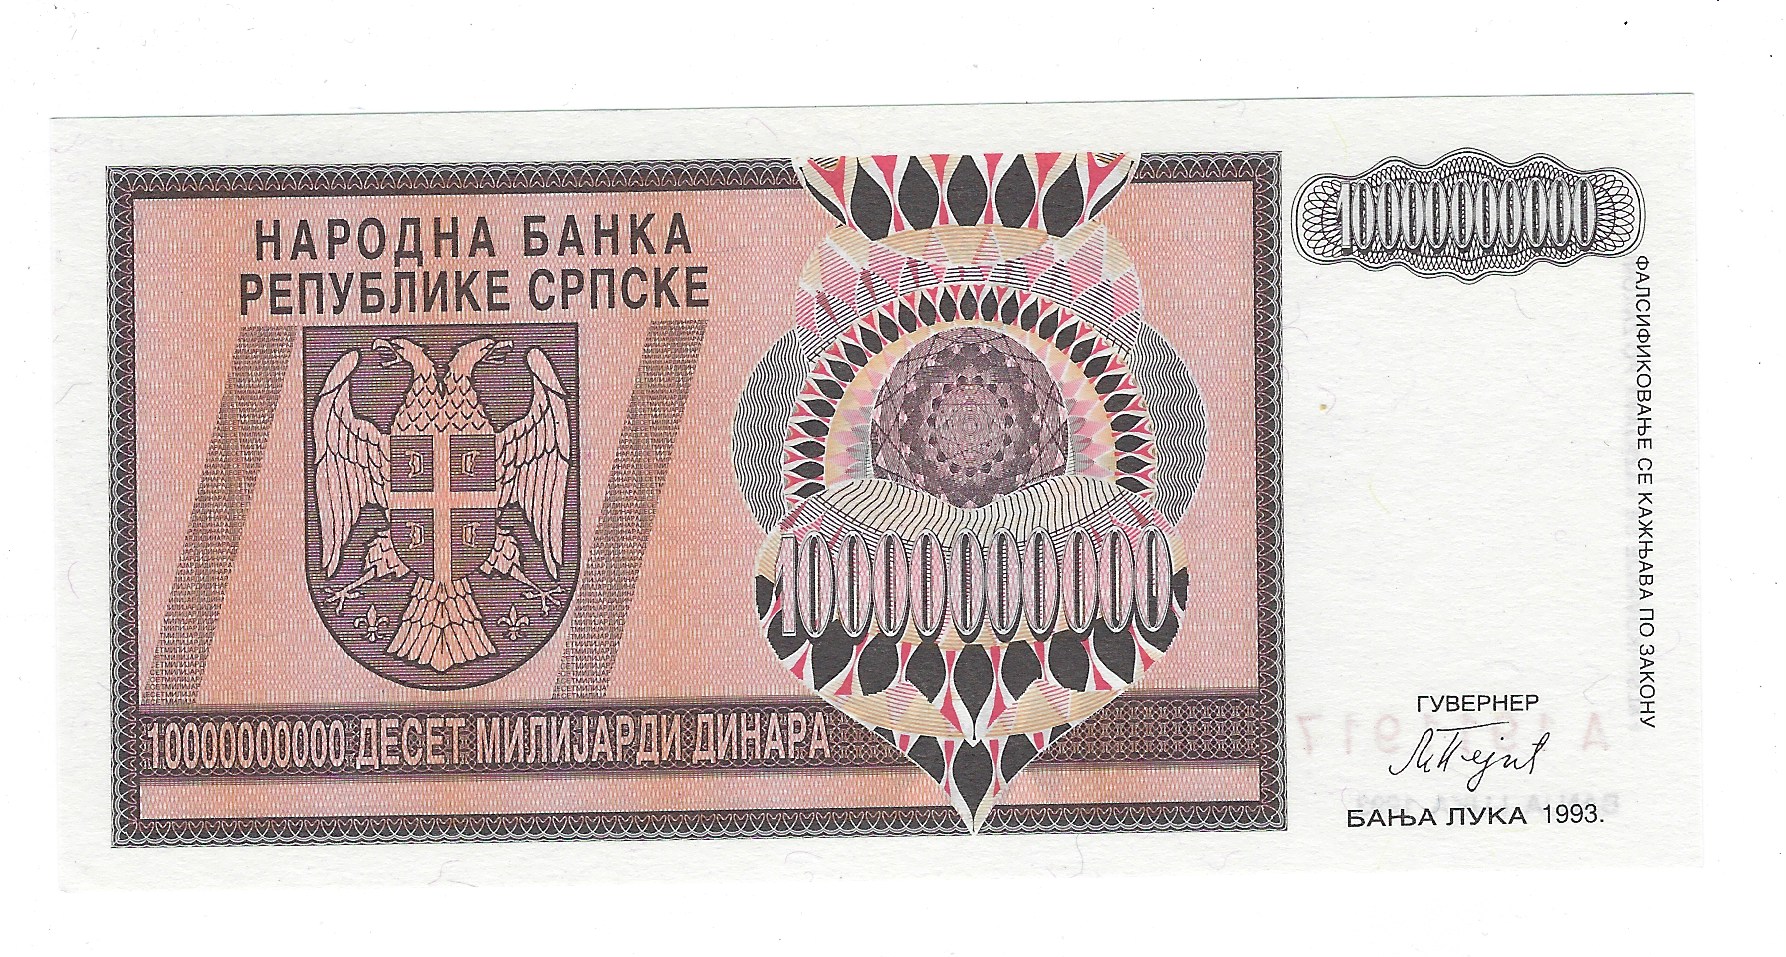 bosnia-herzegovinia-currency